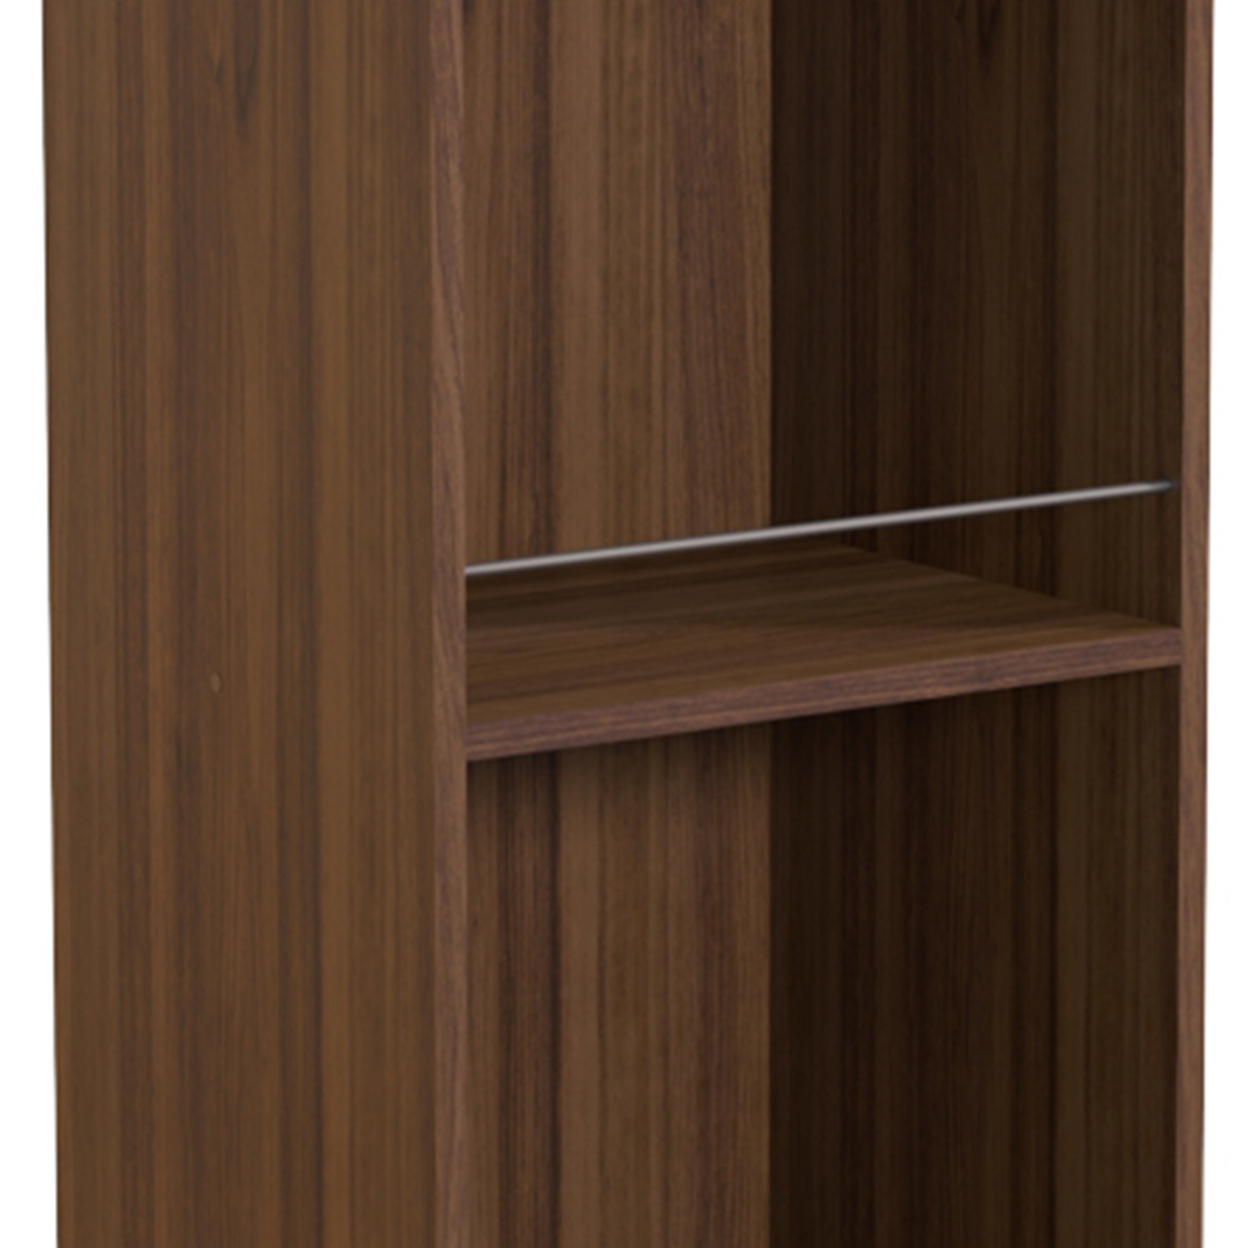 34 Inch 3 Tier Wooden Curio Cabinet With Grain Details, Dark Brown, Saltoro Sherpi